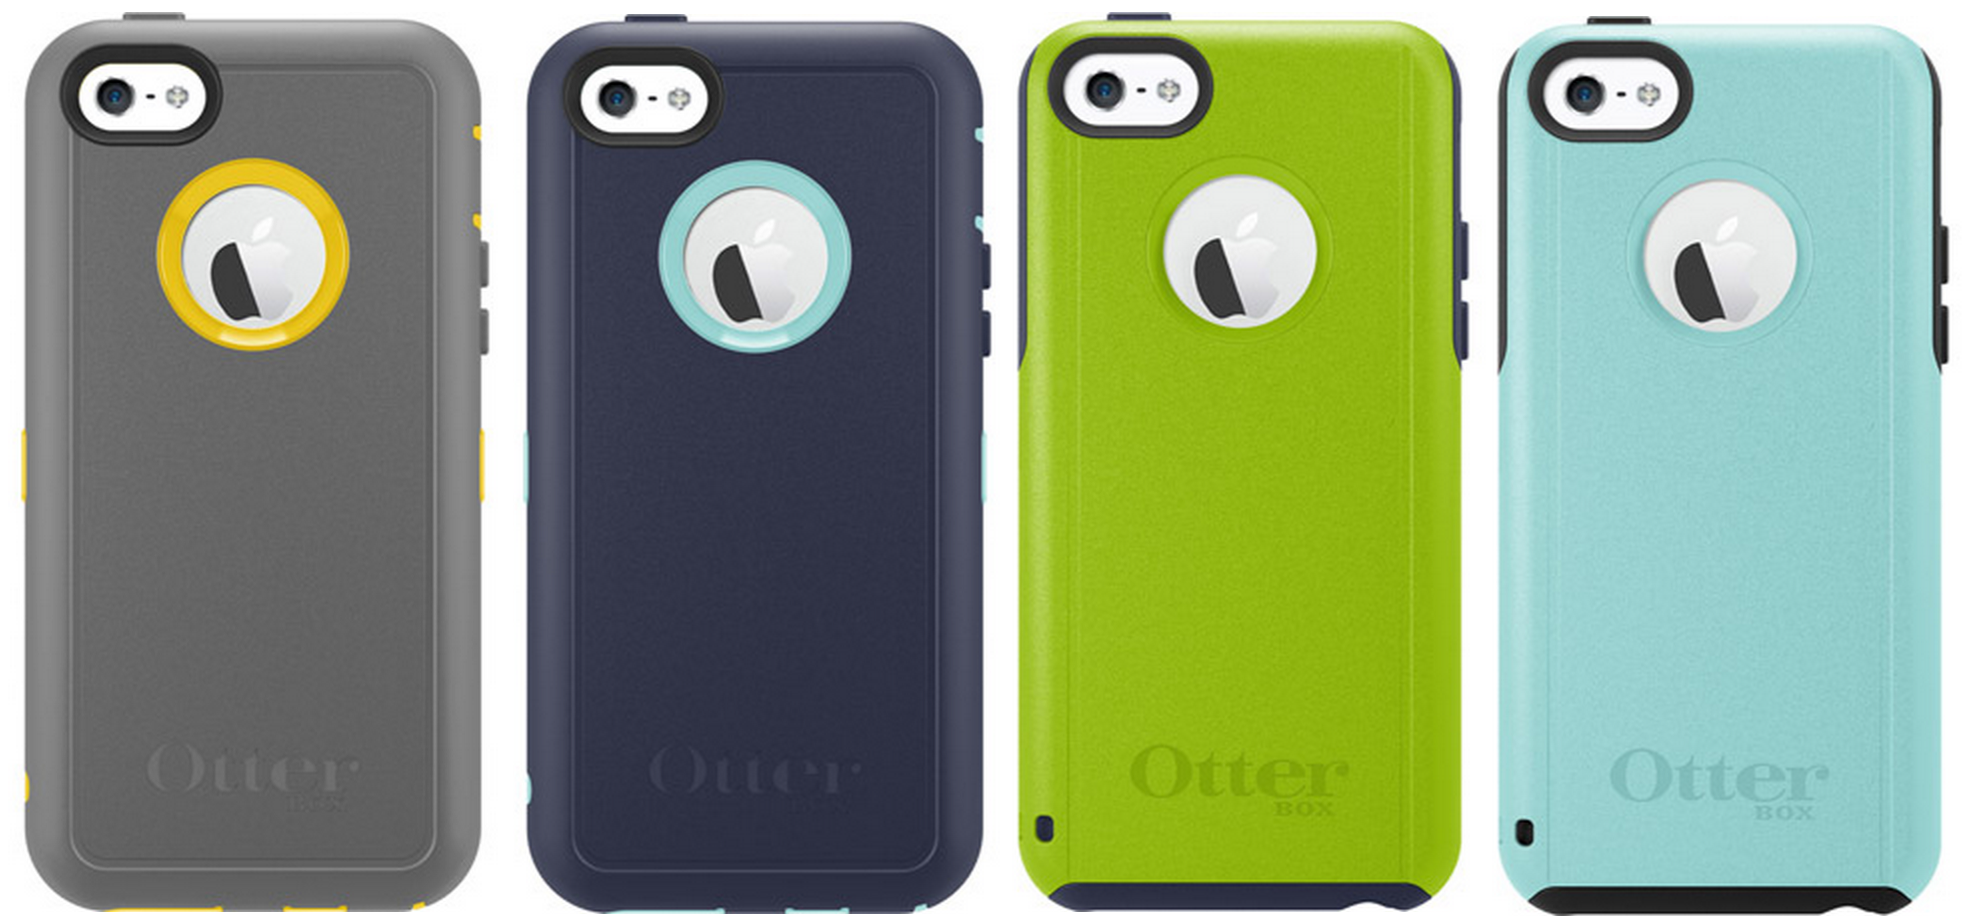 Otterbox-iPhone-5c-cases